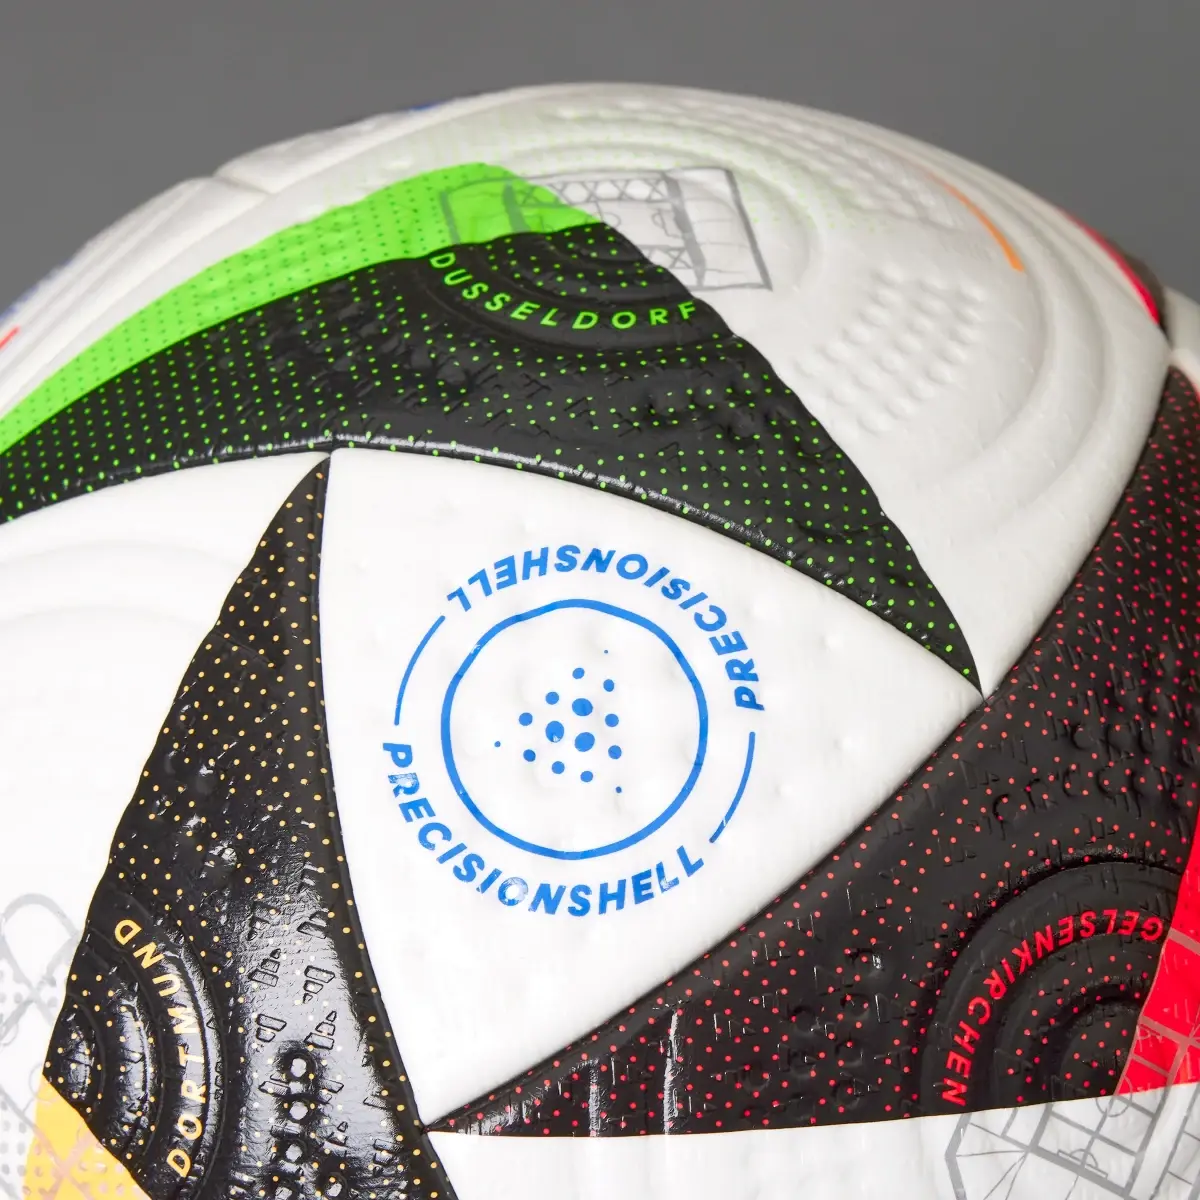 Adidas Balón Fussballliebe Pro. 3